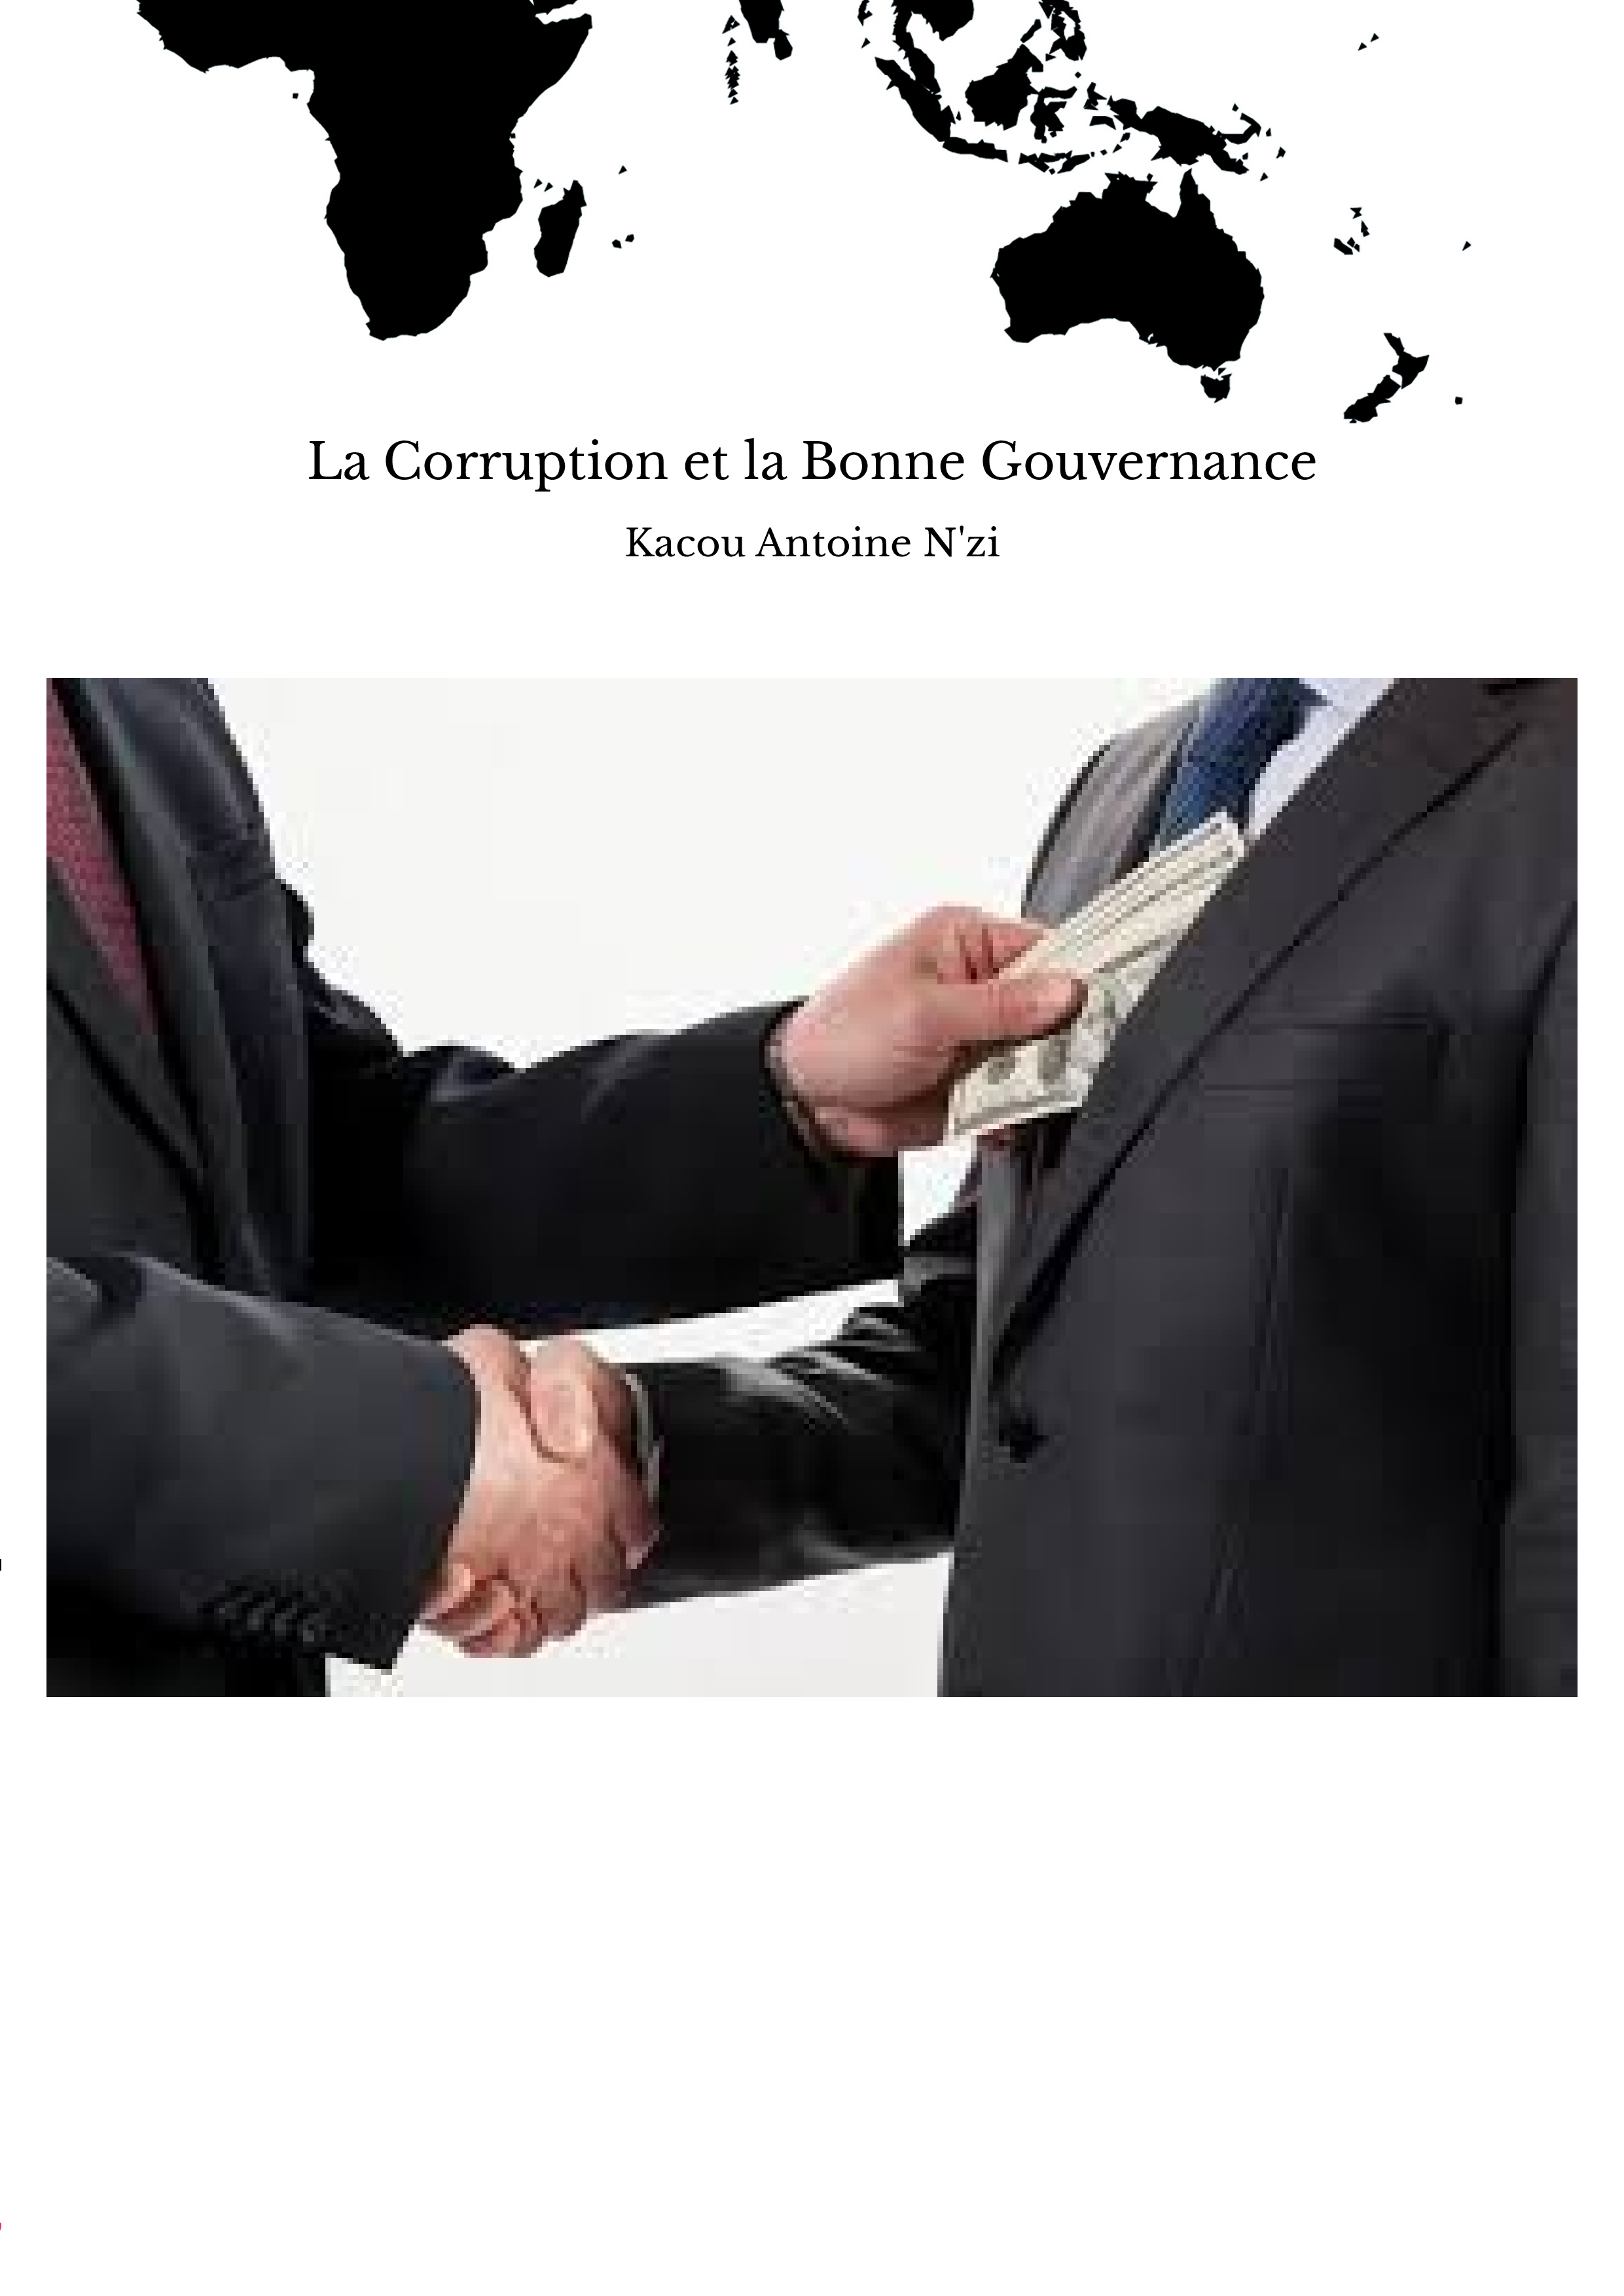 La Corruption et la Bonne Gouvernance